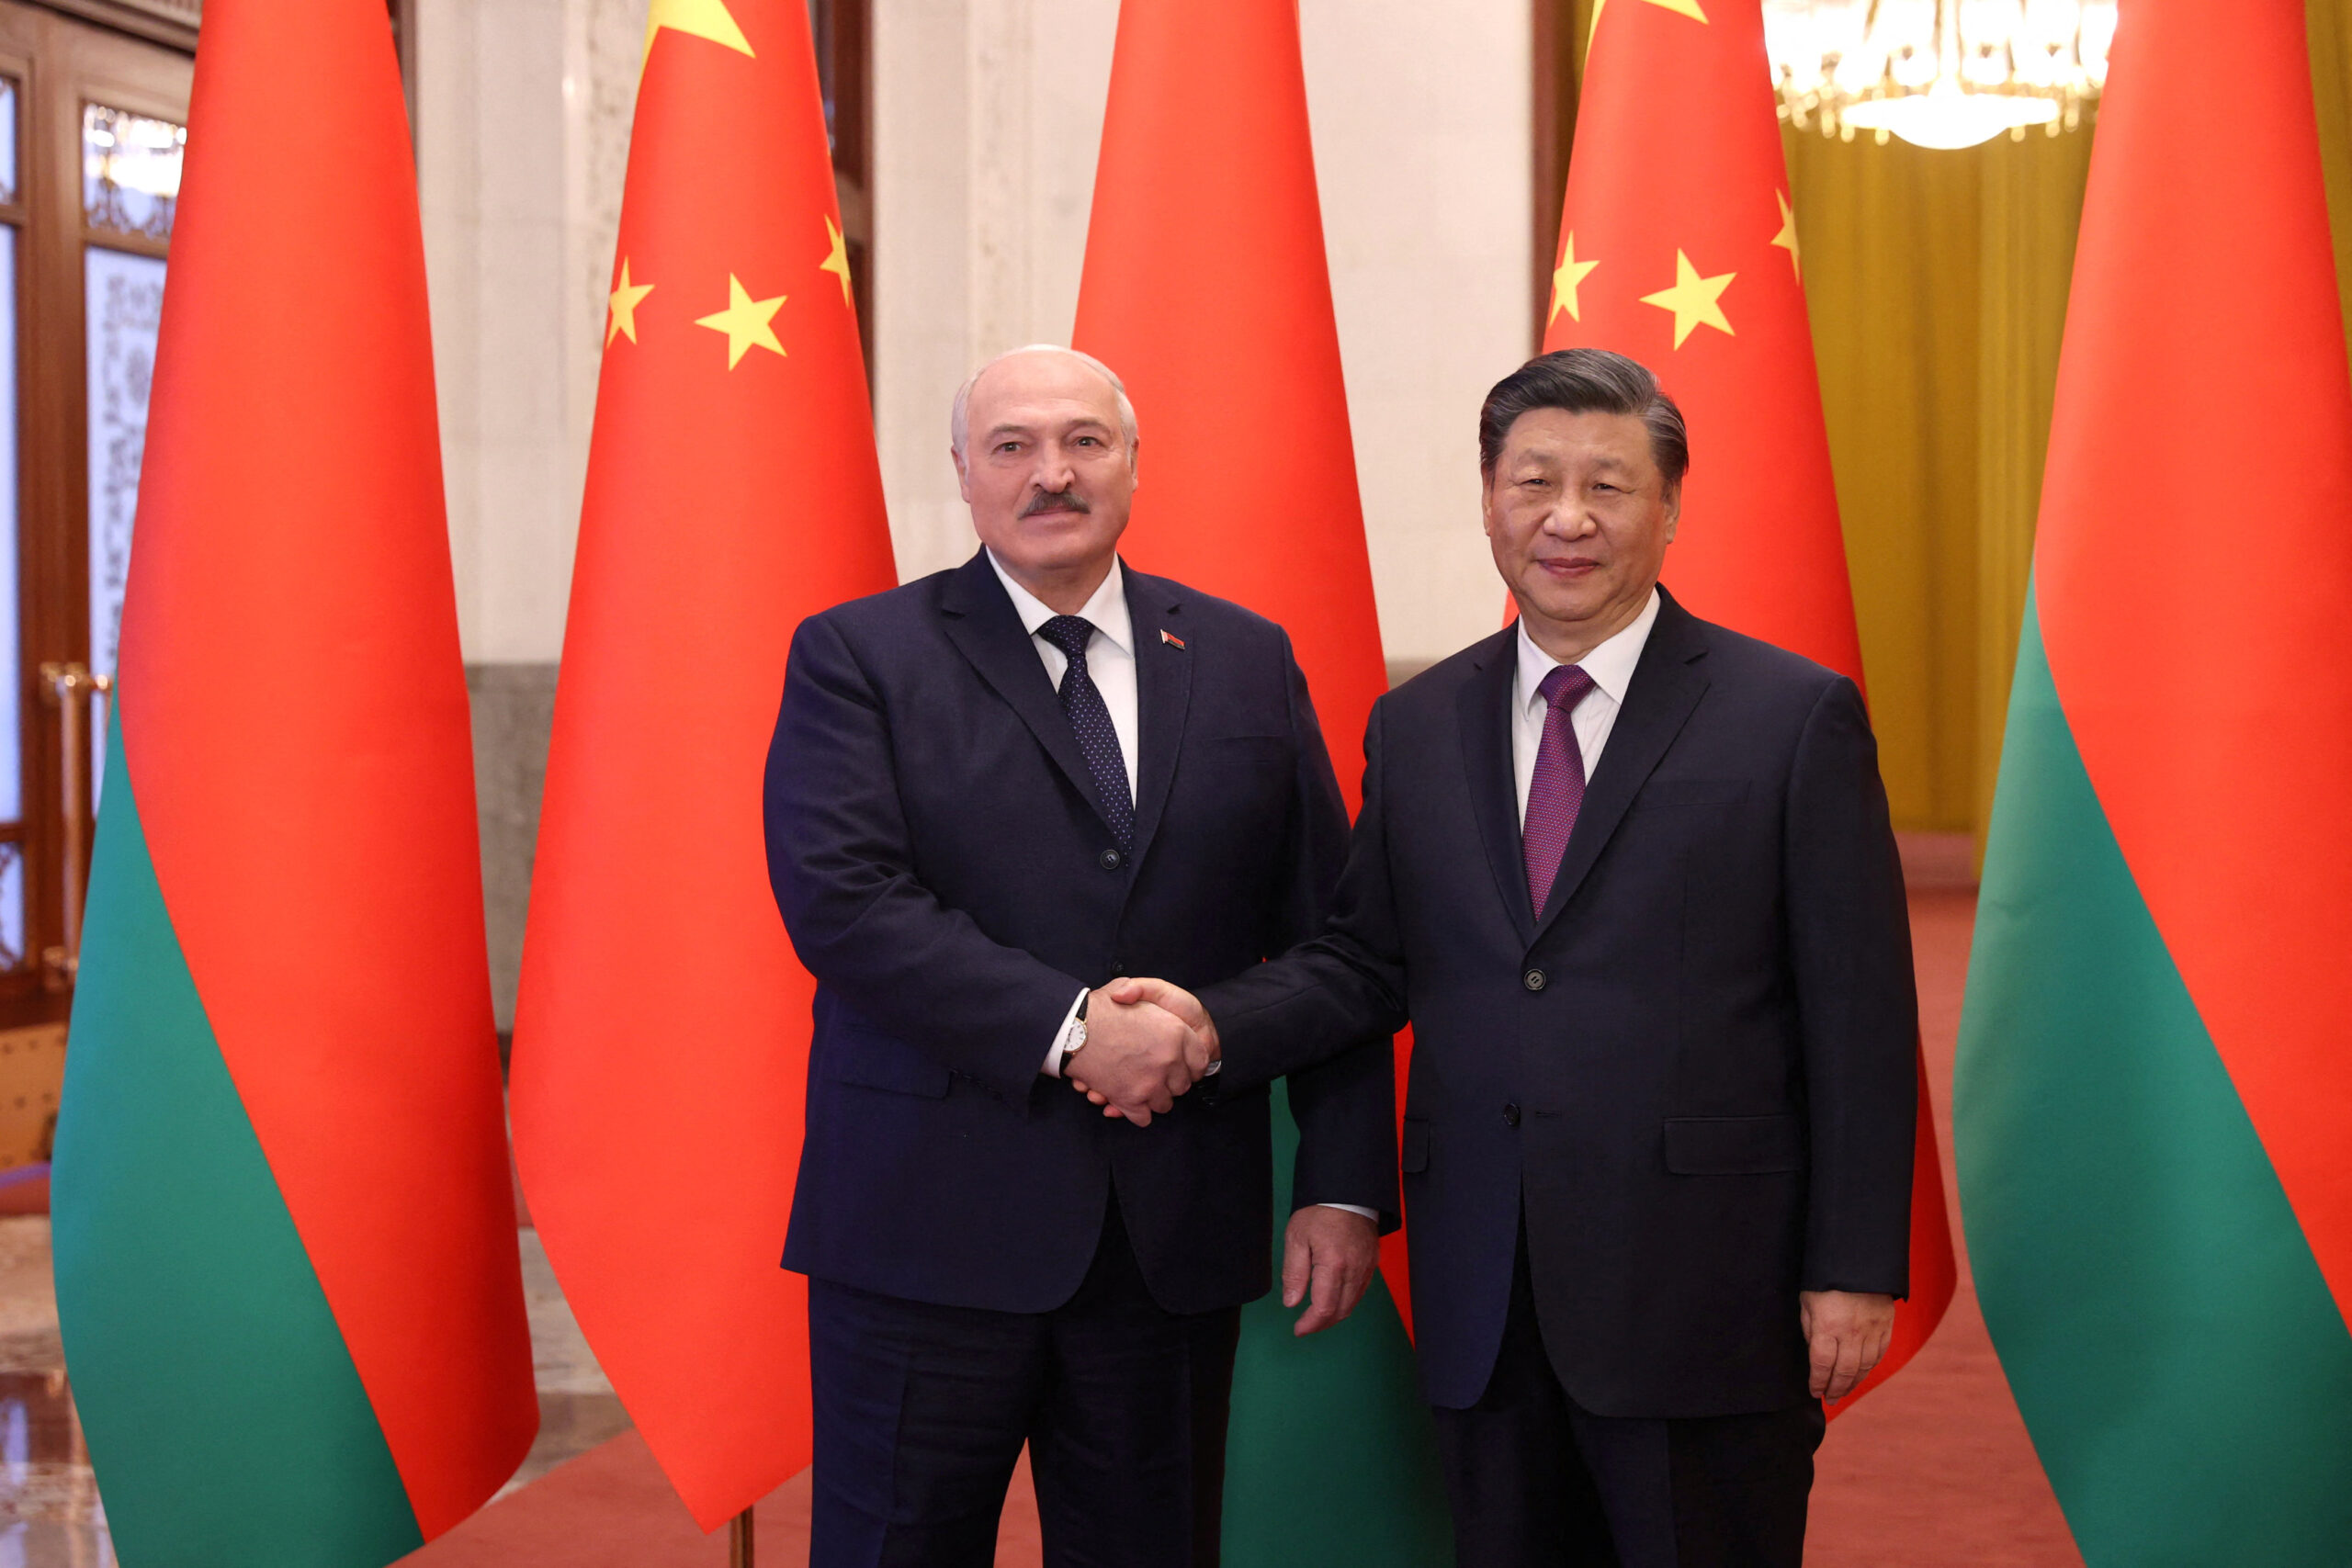 Ο Κινέζος πρόεδρος θέλει να ενισχύσει τις σχέσεις με τη Λευκορωσία